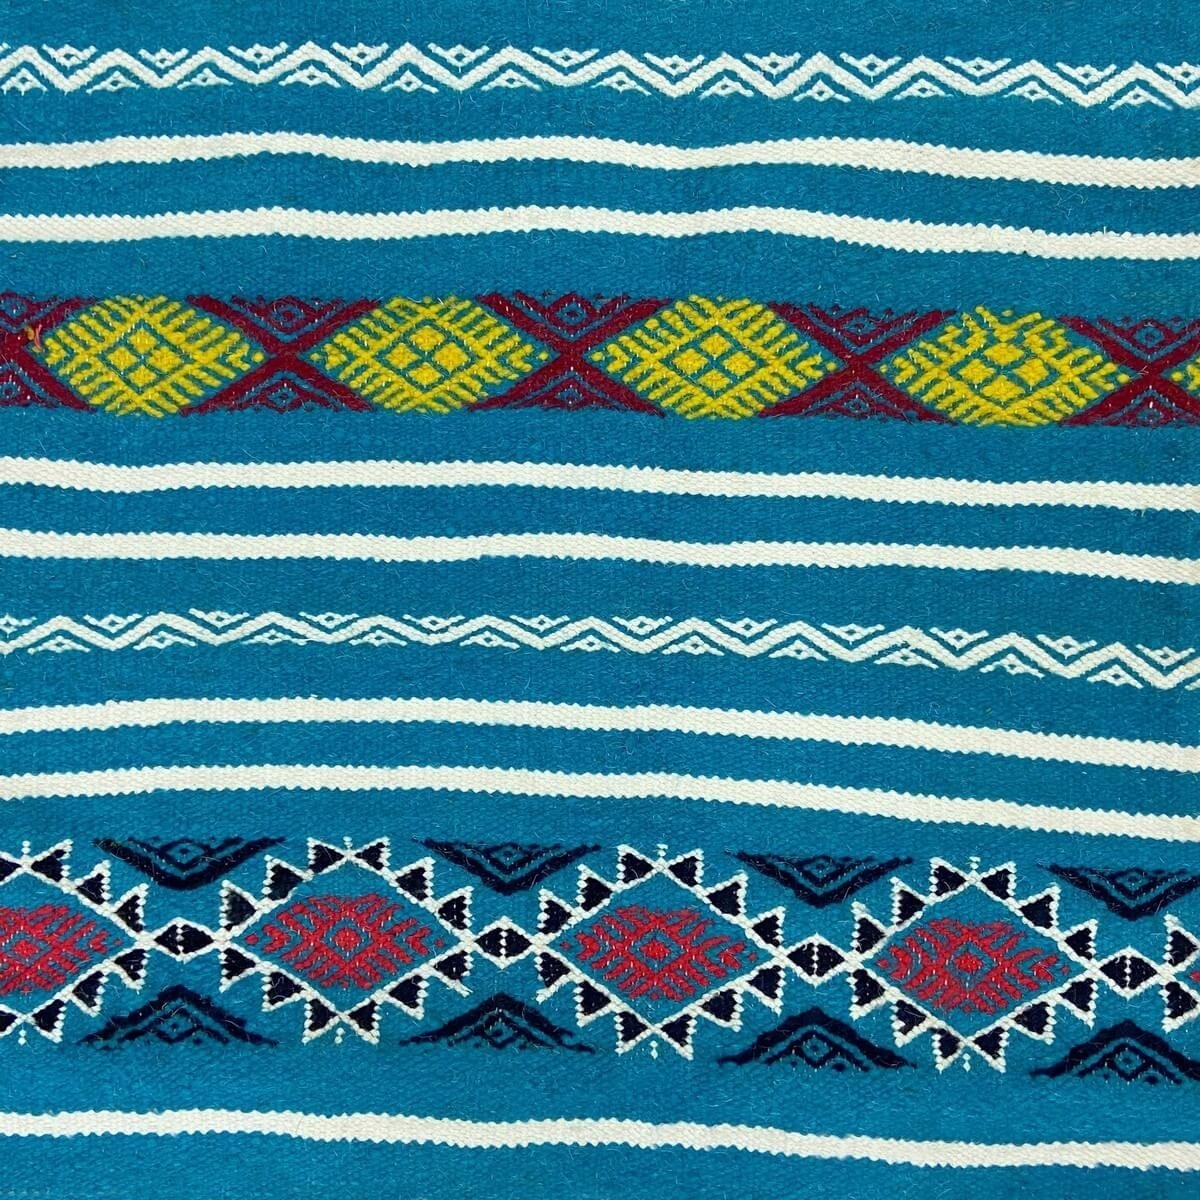 Tapete berbere Tapete Kilim Emder 107x140 Turquesa/Amarelo/Vermelho (Tecidos à mão, Lã) Tapete tunisiano kilim, estilo marroquin